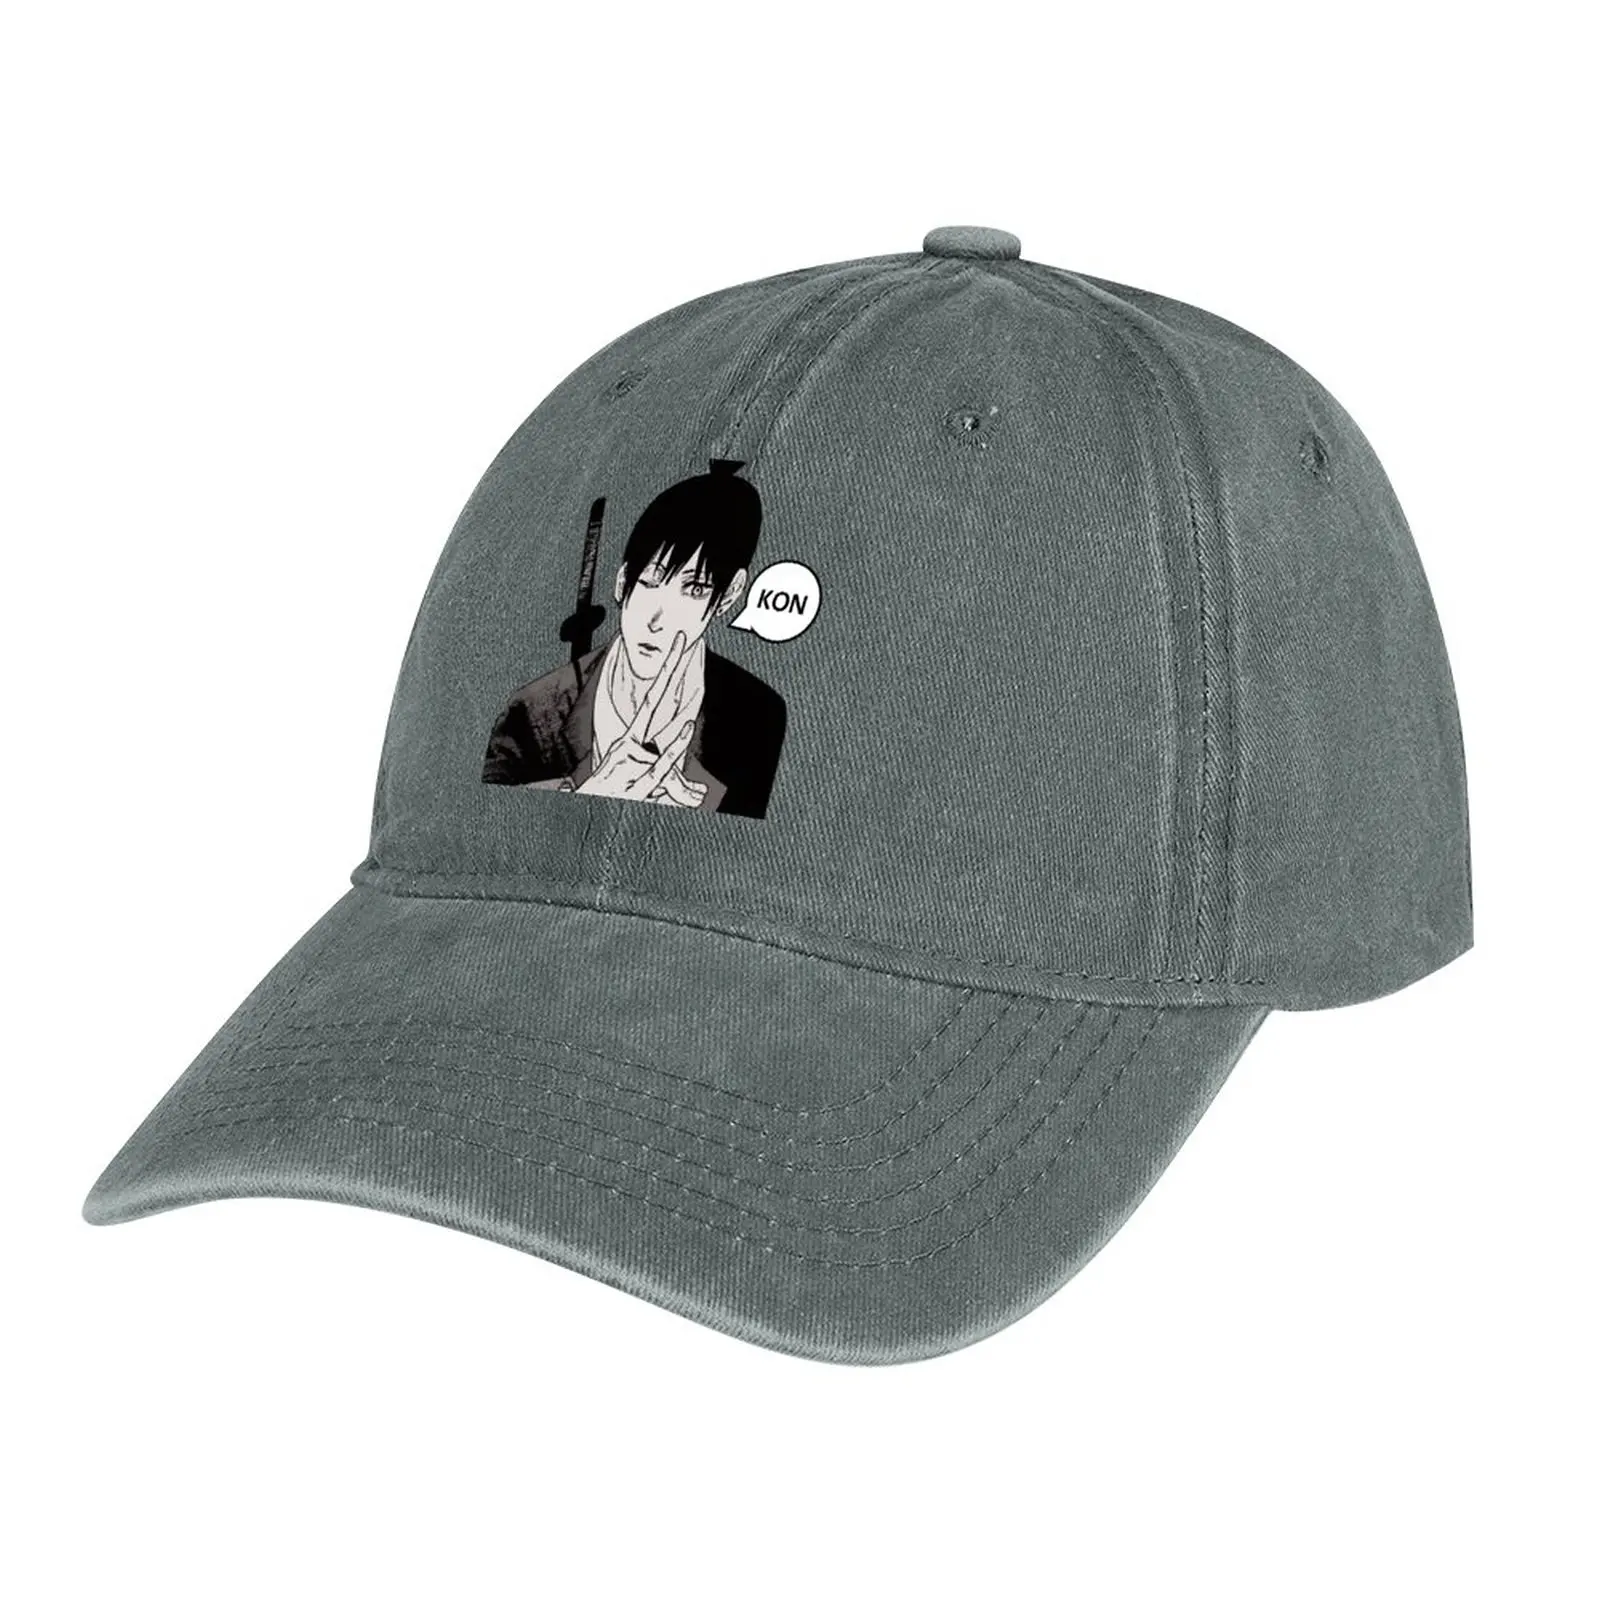 אקי האיאקאווה מן המסור אדם קאובוי כובע גולף ללבוש מותג אדם כובעי הצמד חזרה כובע כובע גברים נשים